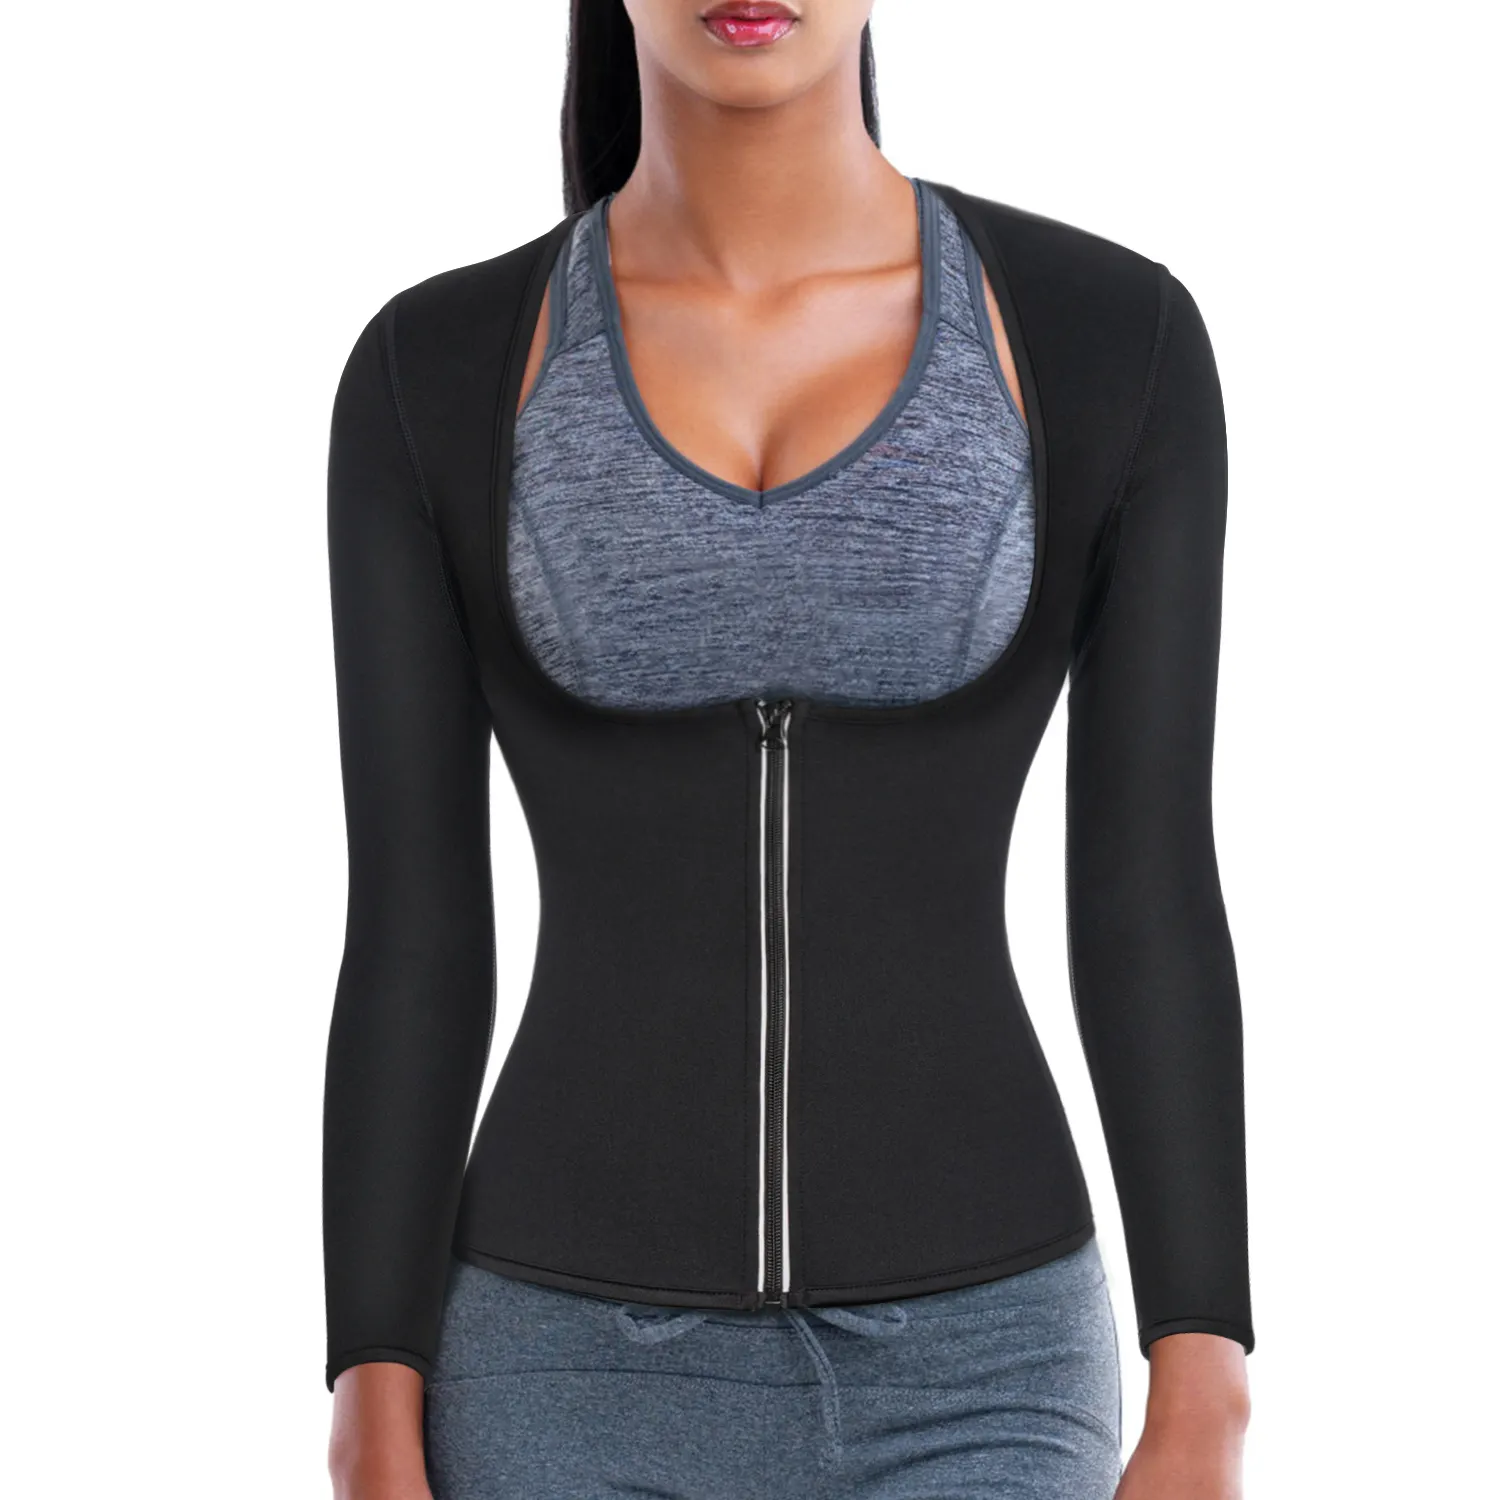 Sauna Suit Waist Trainer Neoprene Shirt for Sport Workout Weight Loss long sleeve Corset swimming corset bodysuit shirt women